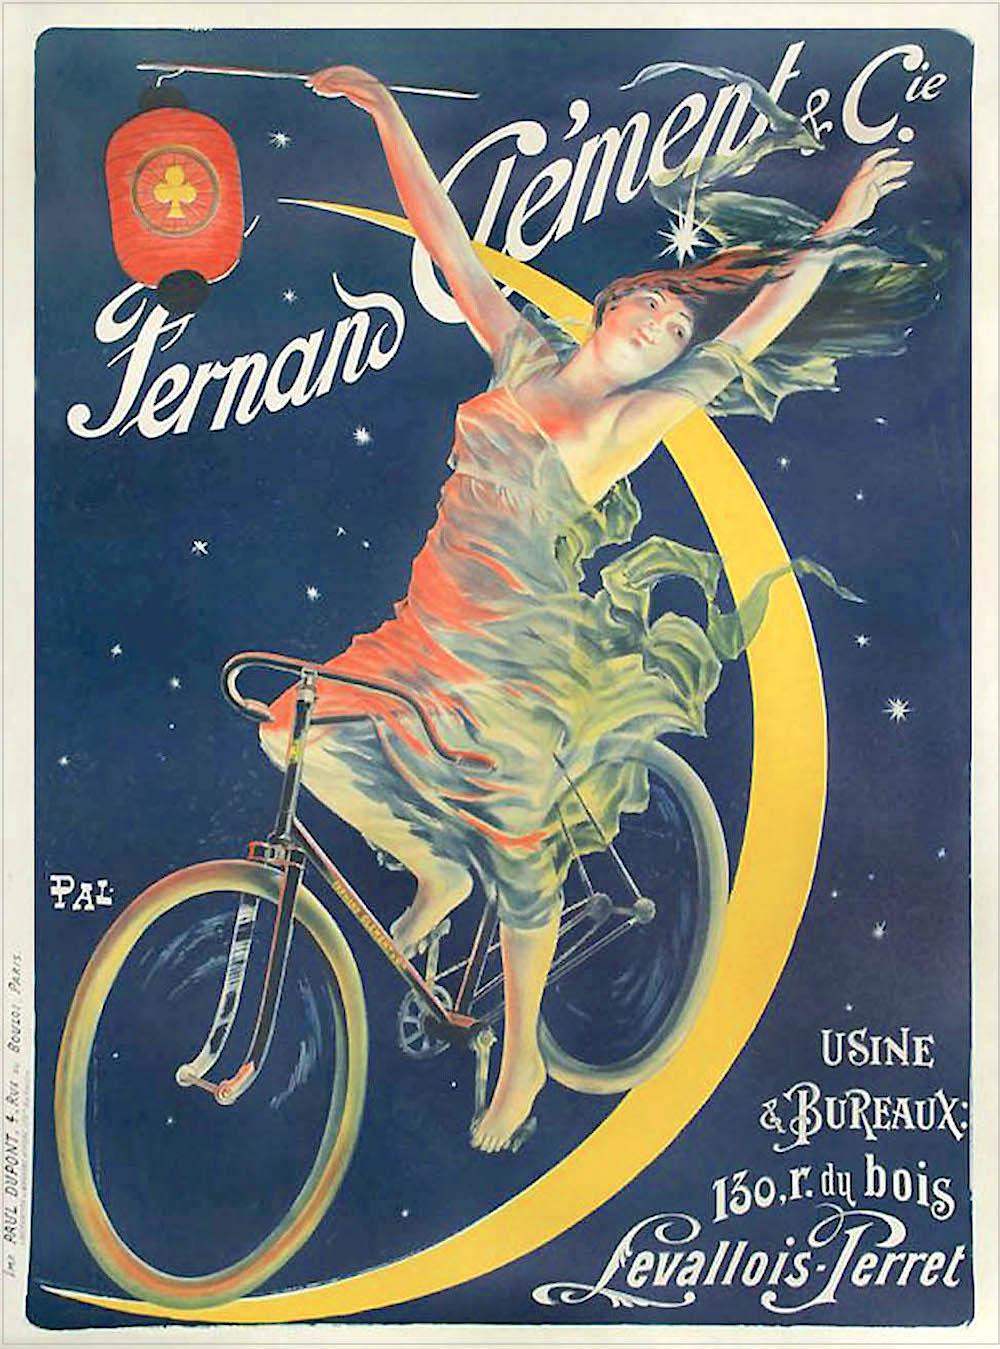 Figurative Print Pal (Jean de Paléologue) - CLÉMENT CYCLES Lithographie, Femme sur bicyclette, Lune, Publicité française Art 52"